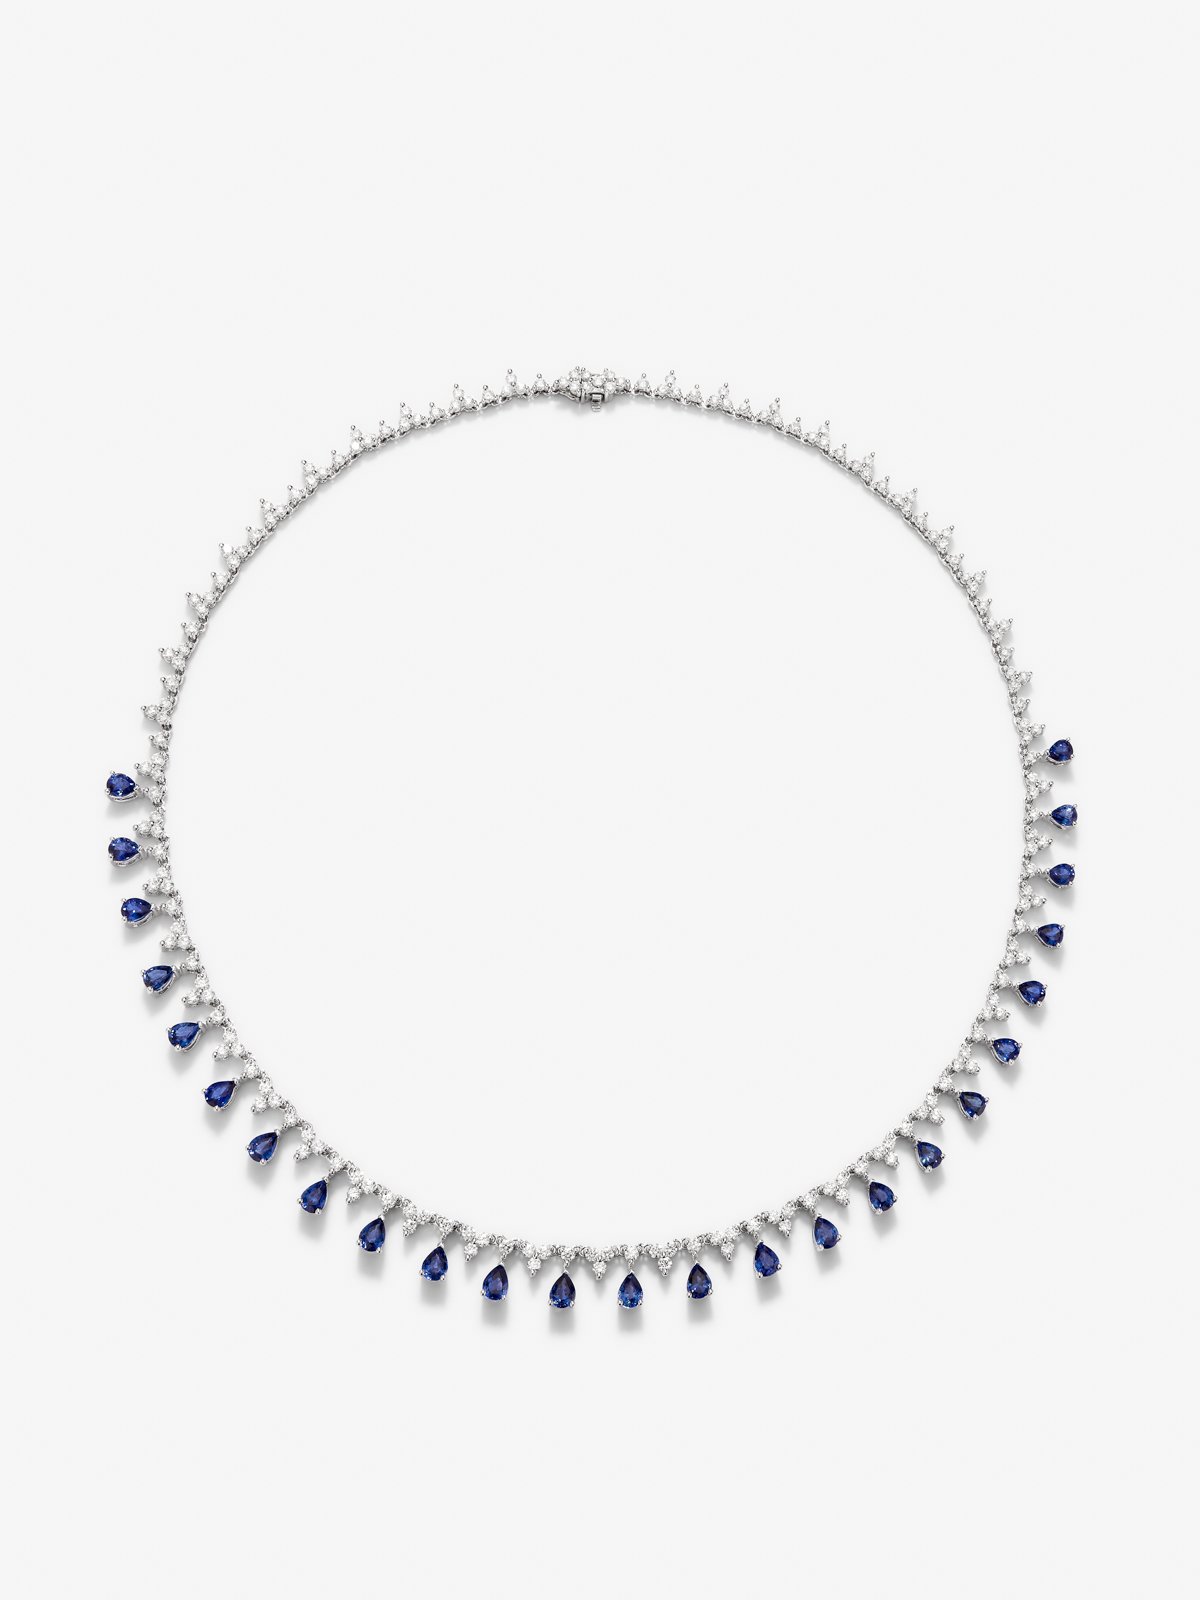 Collar rivière de oro blanco de 18K con zafiros azules en talla pera de 6,51 cts y diamantes blancos en talla brillante de 6,16 cts